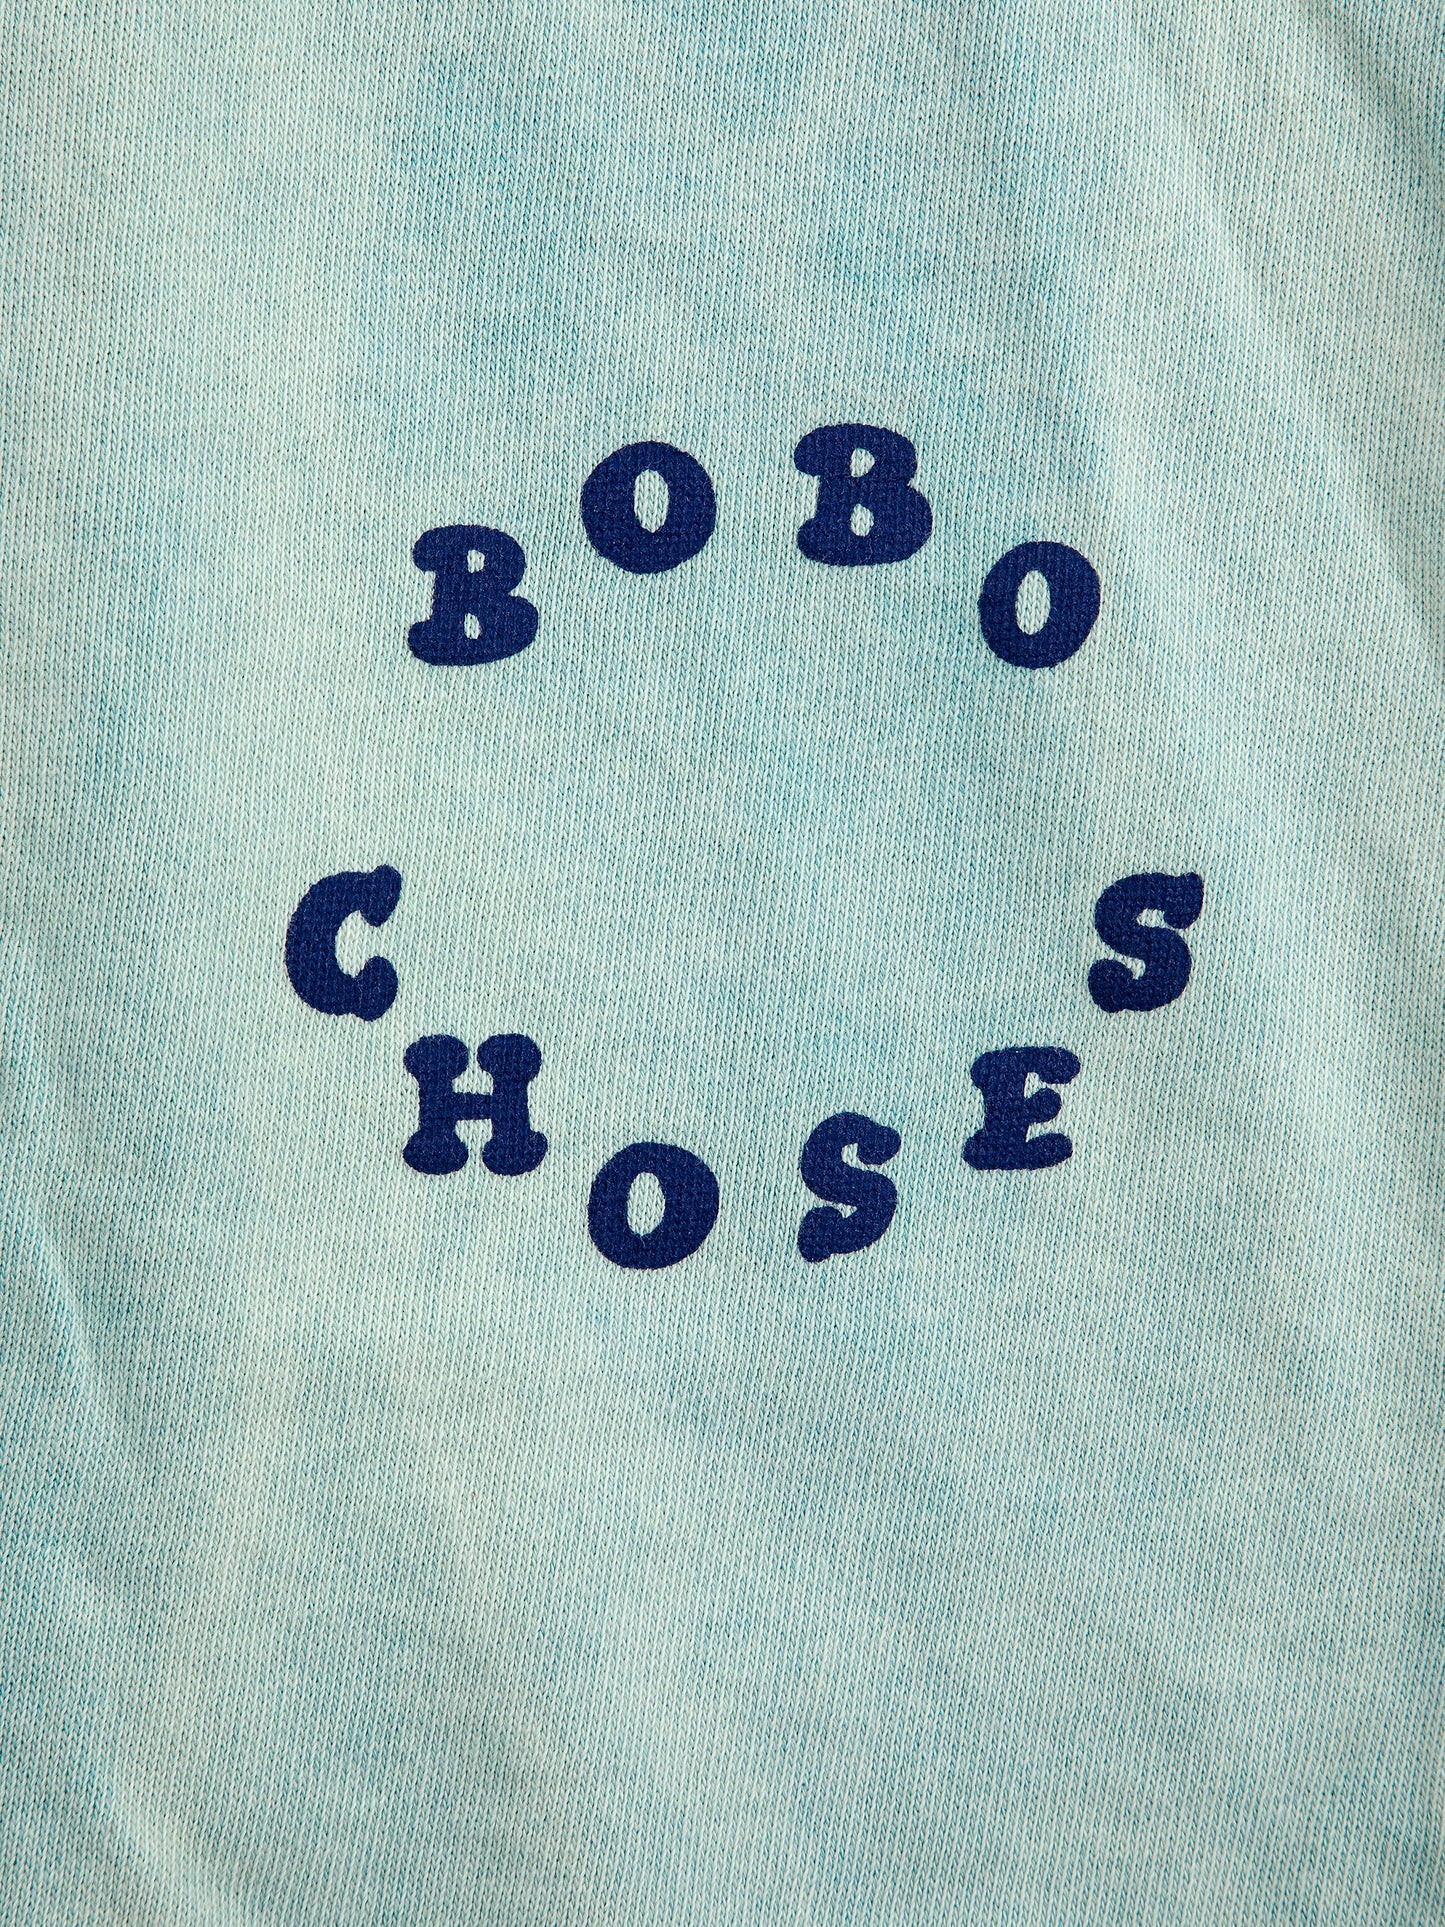 Bobo Choses Circle Jogging Pants